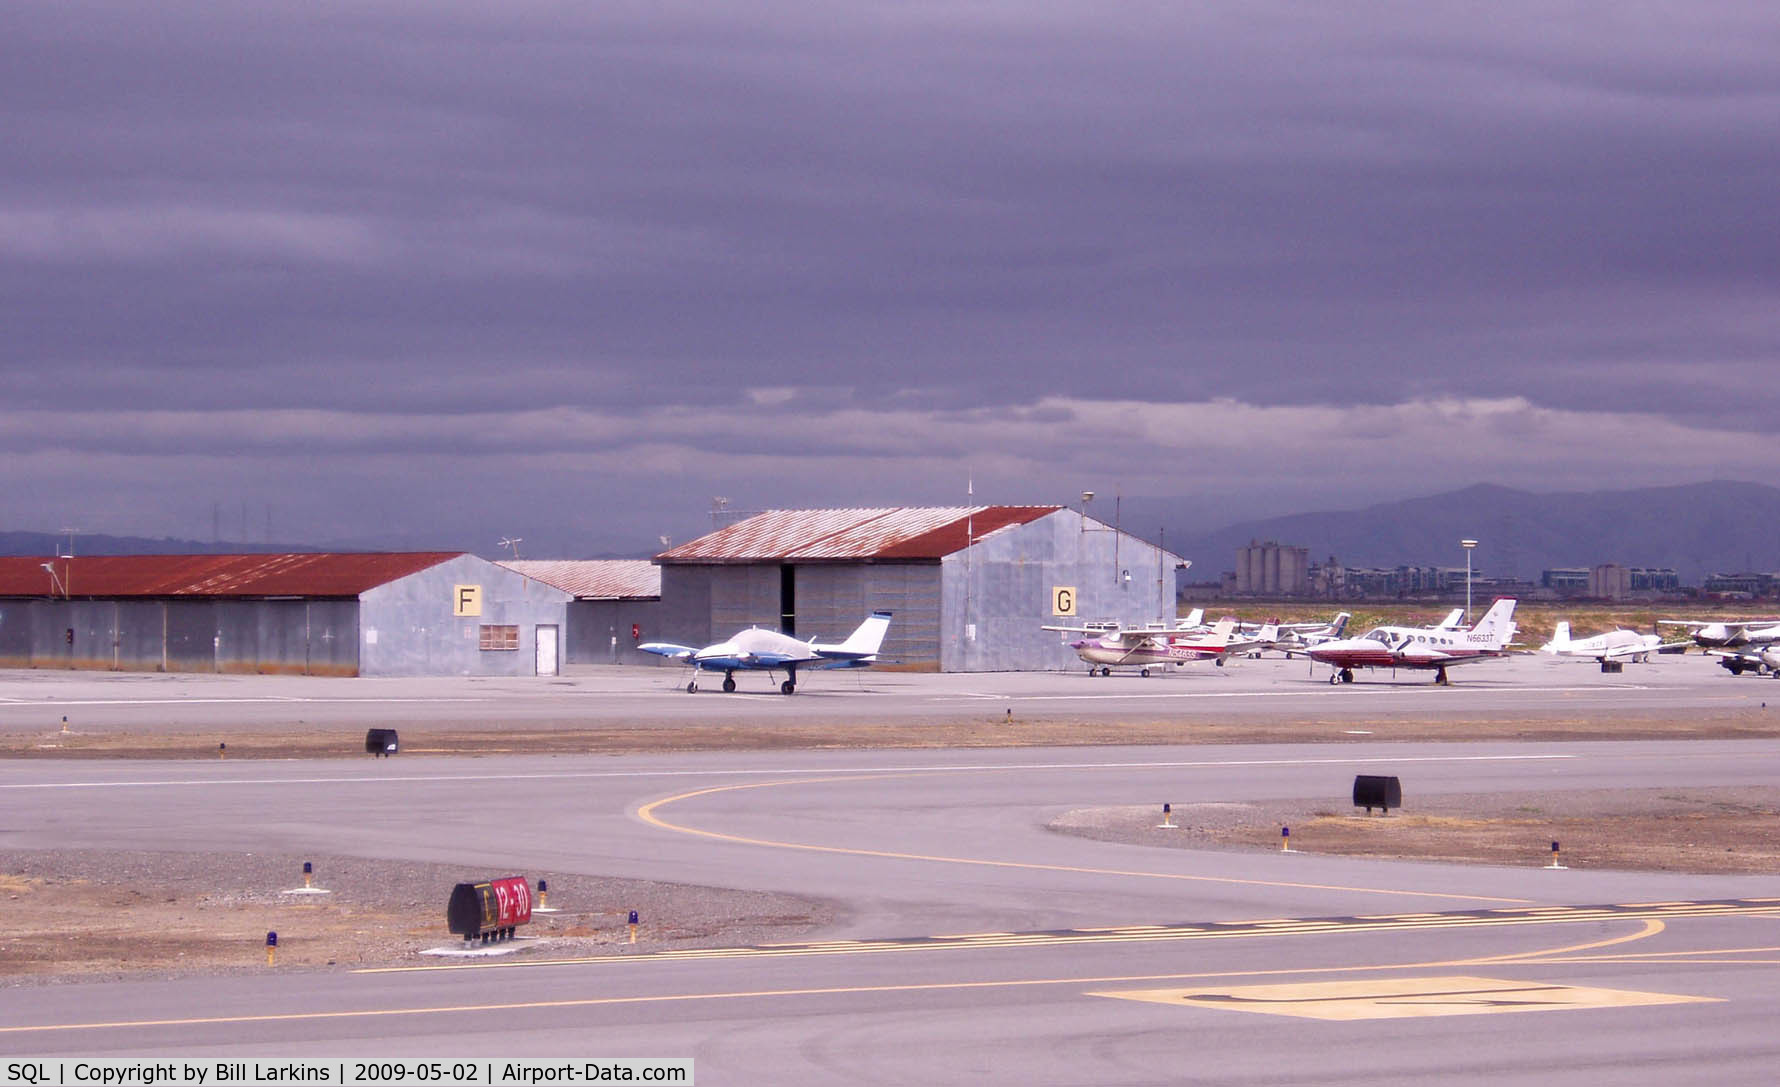 San Carlos Airport (SQL) - Panorama 4 of 4.